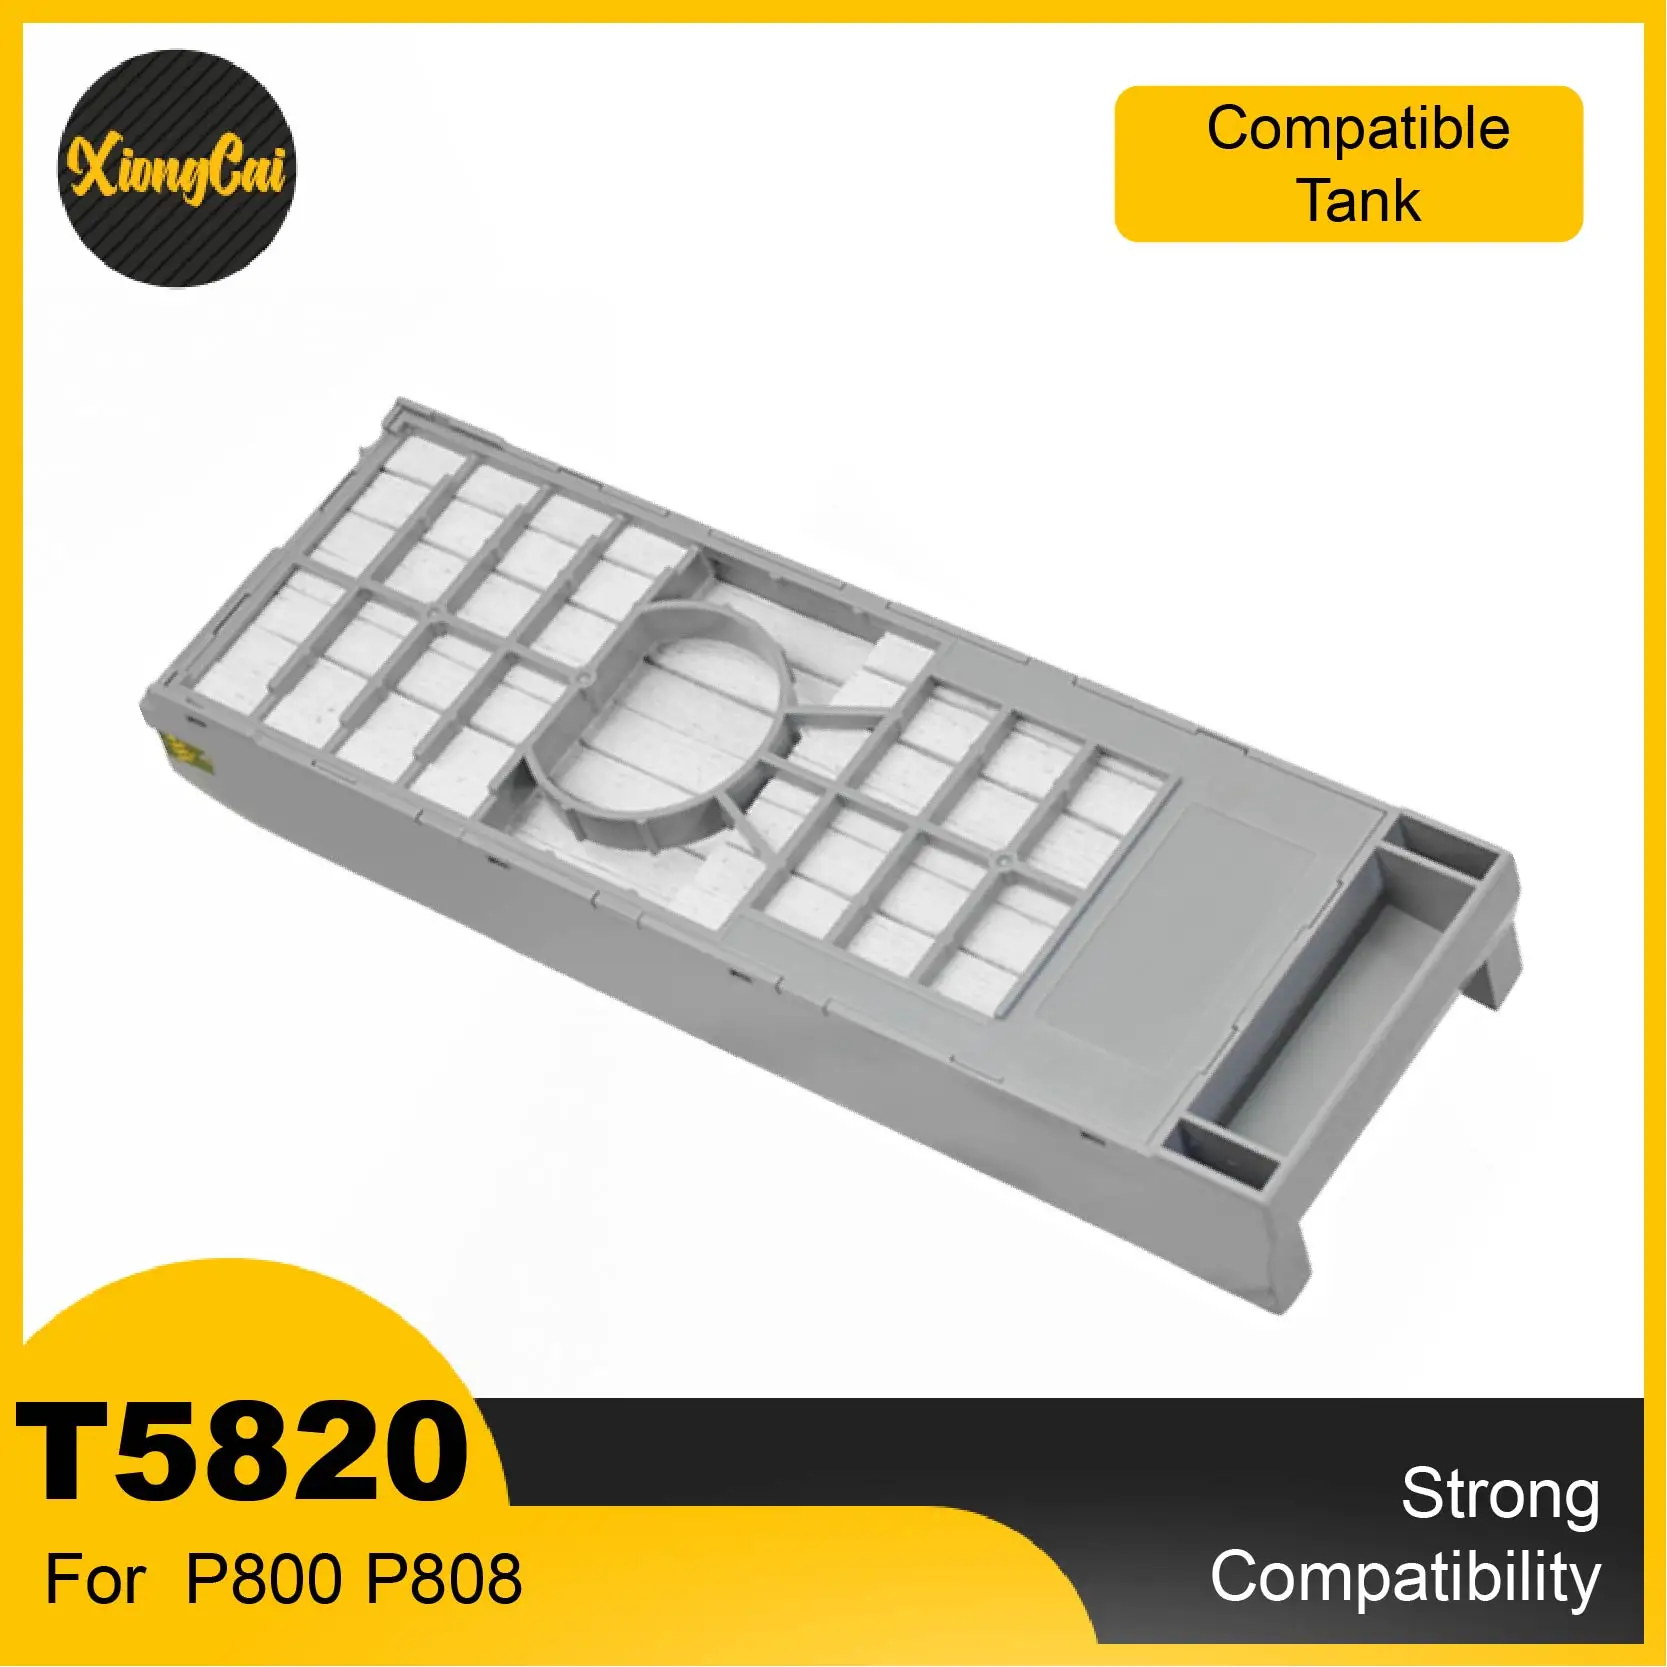 

T5820 T582000 Maintenance Ink Tank For Epson SureColor SC-P800 P800 P808 D880 D700 SureLab Stylus Maintenance Box DX100